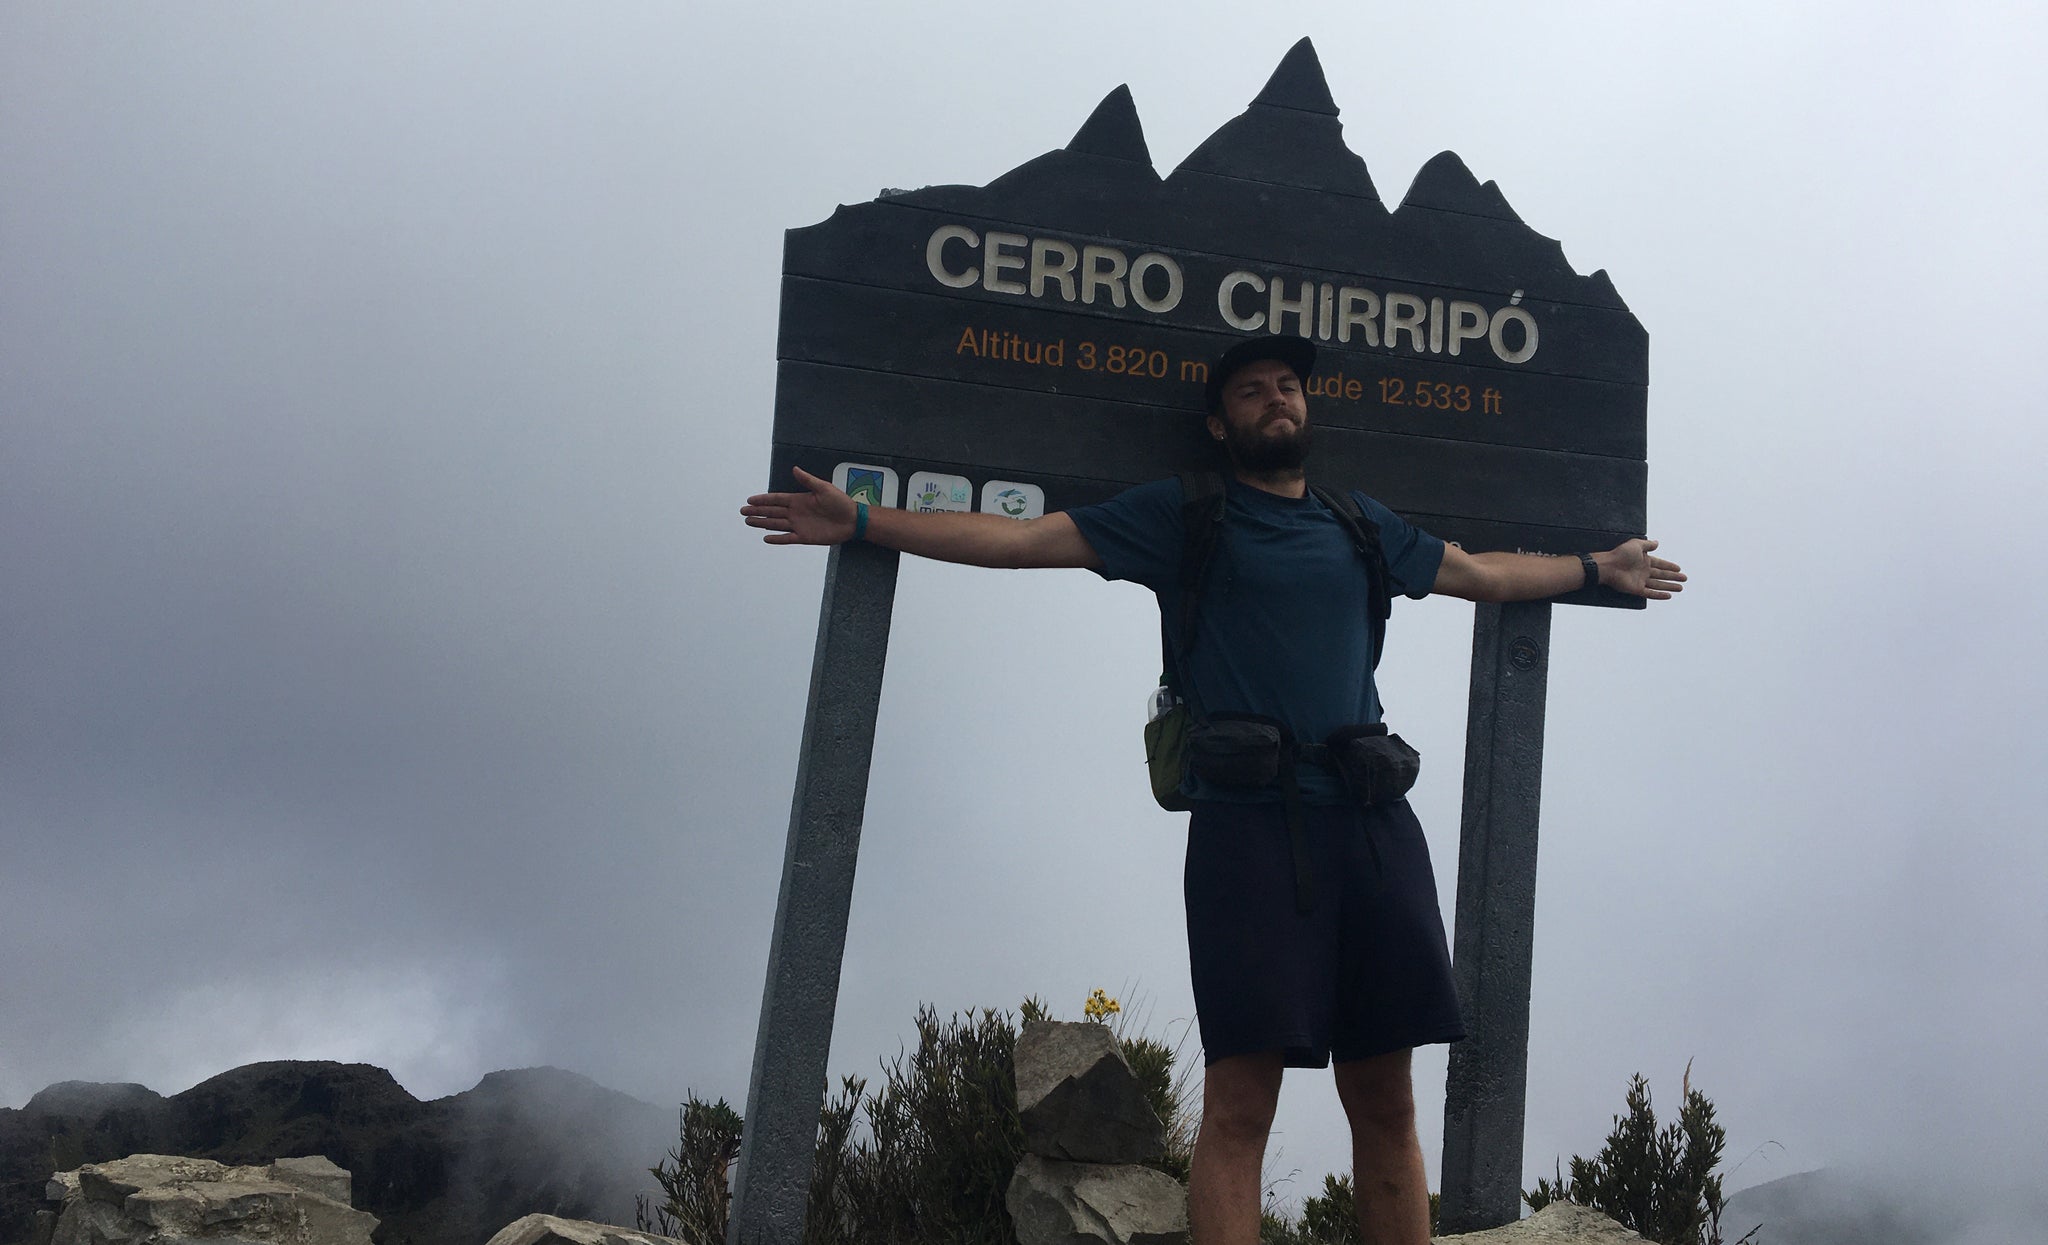 Hiker at the summit of Cerro Chirripo